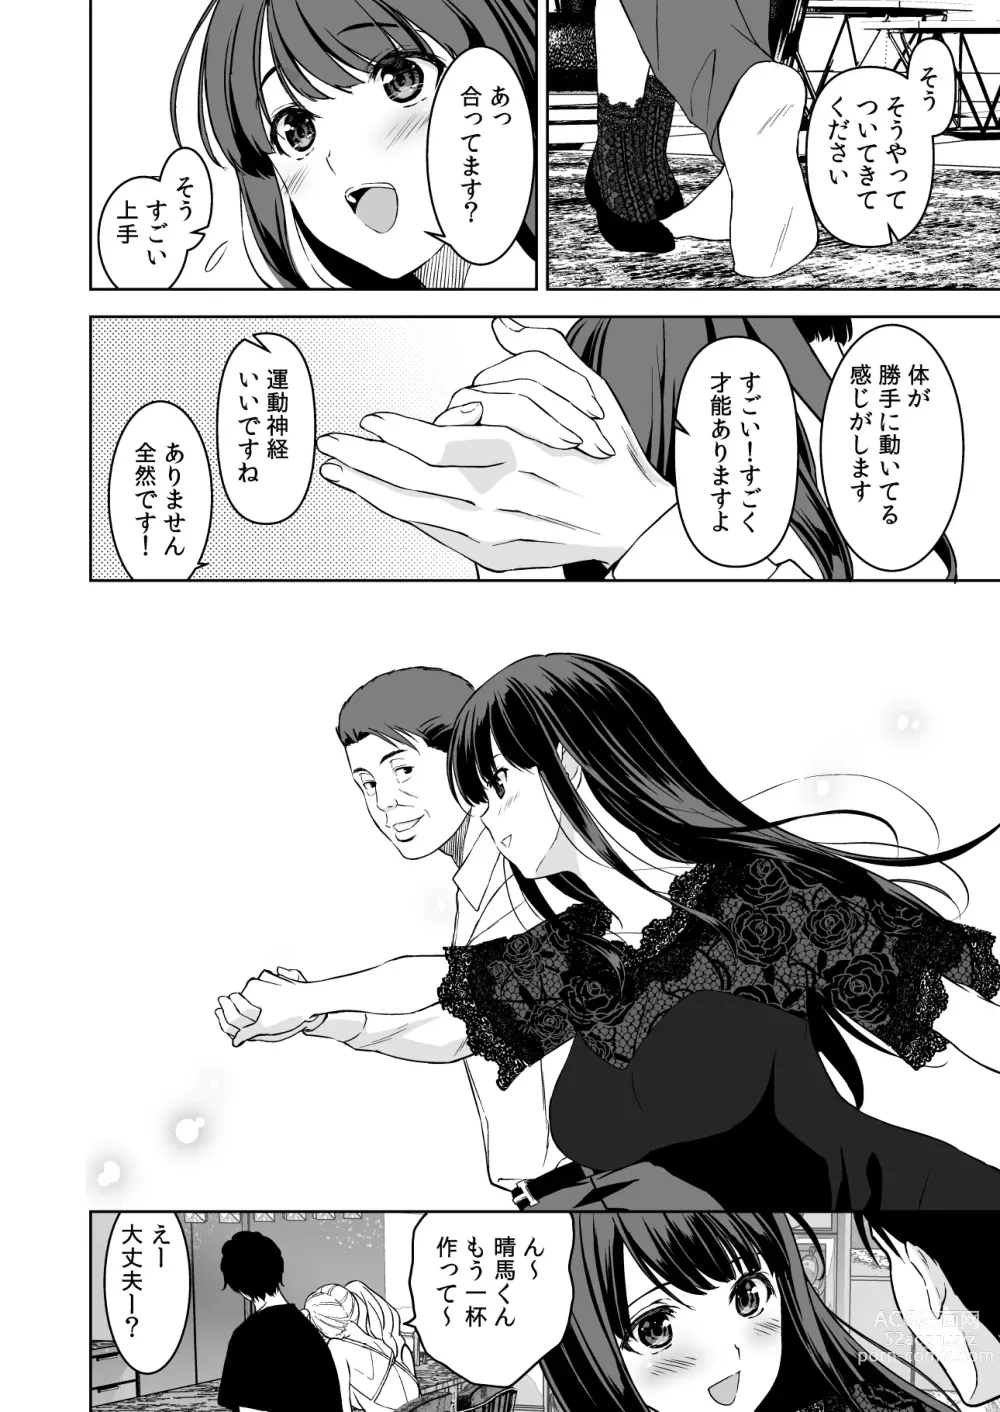 Page 15 of doujinshi Ane to Bitch no Hito ni wa Ienai Minatoku Tawaman Party Night